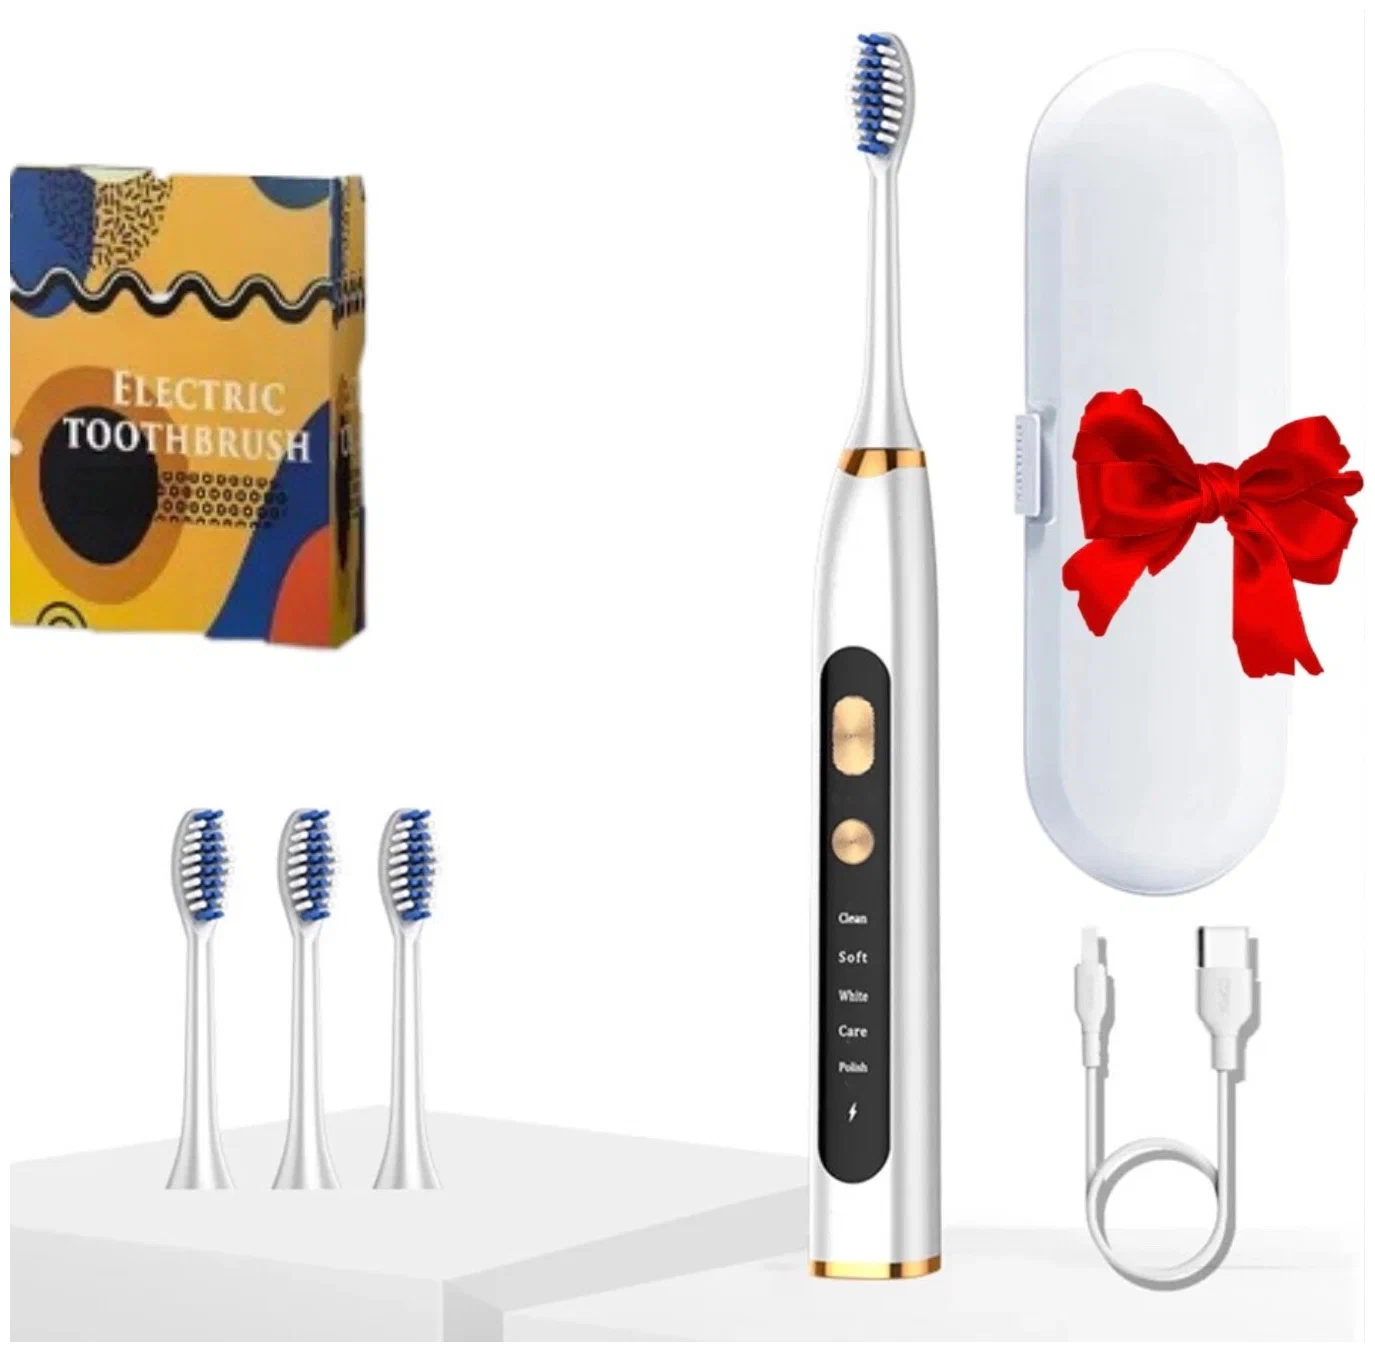 Лучшая дешевая электрическая зубная щетка: Xiaomi Electric Toothbrush